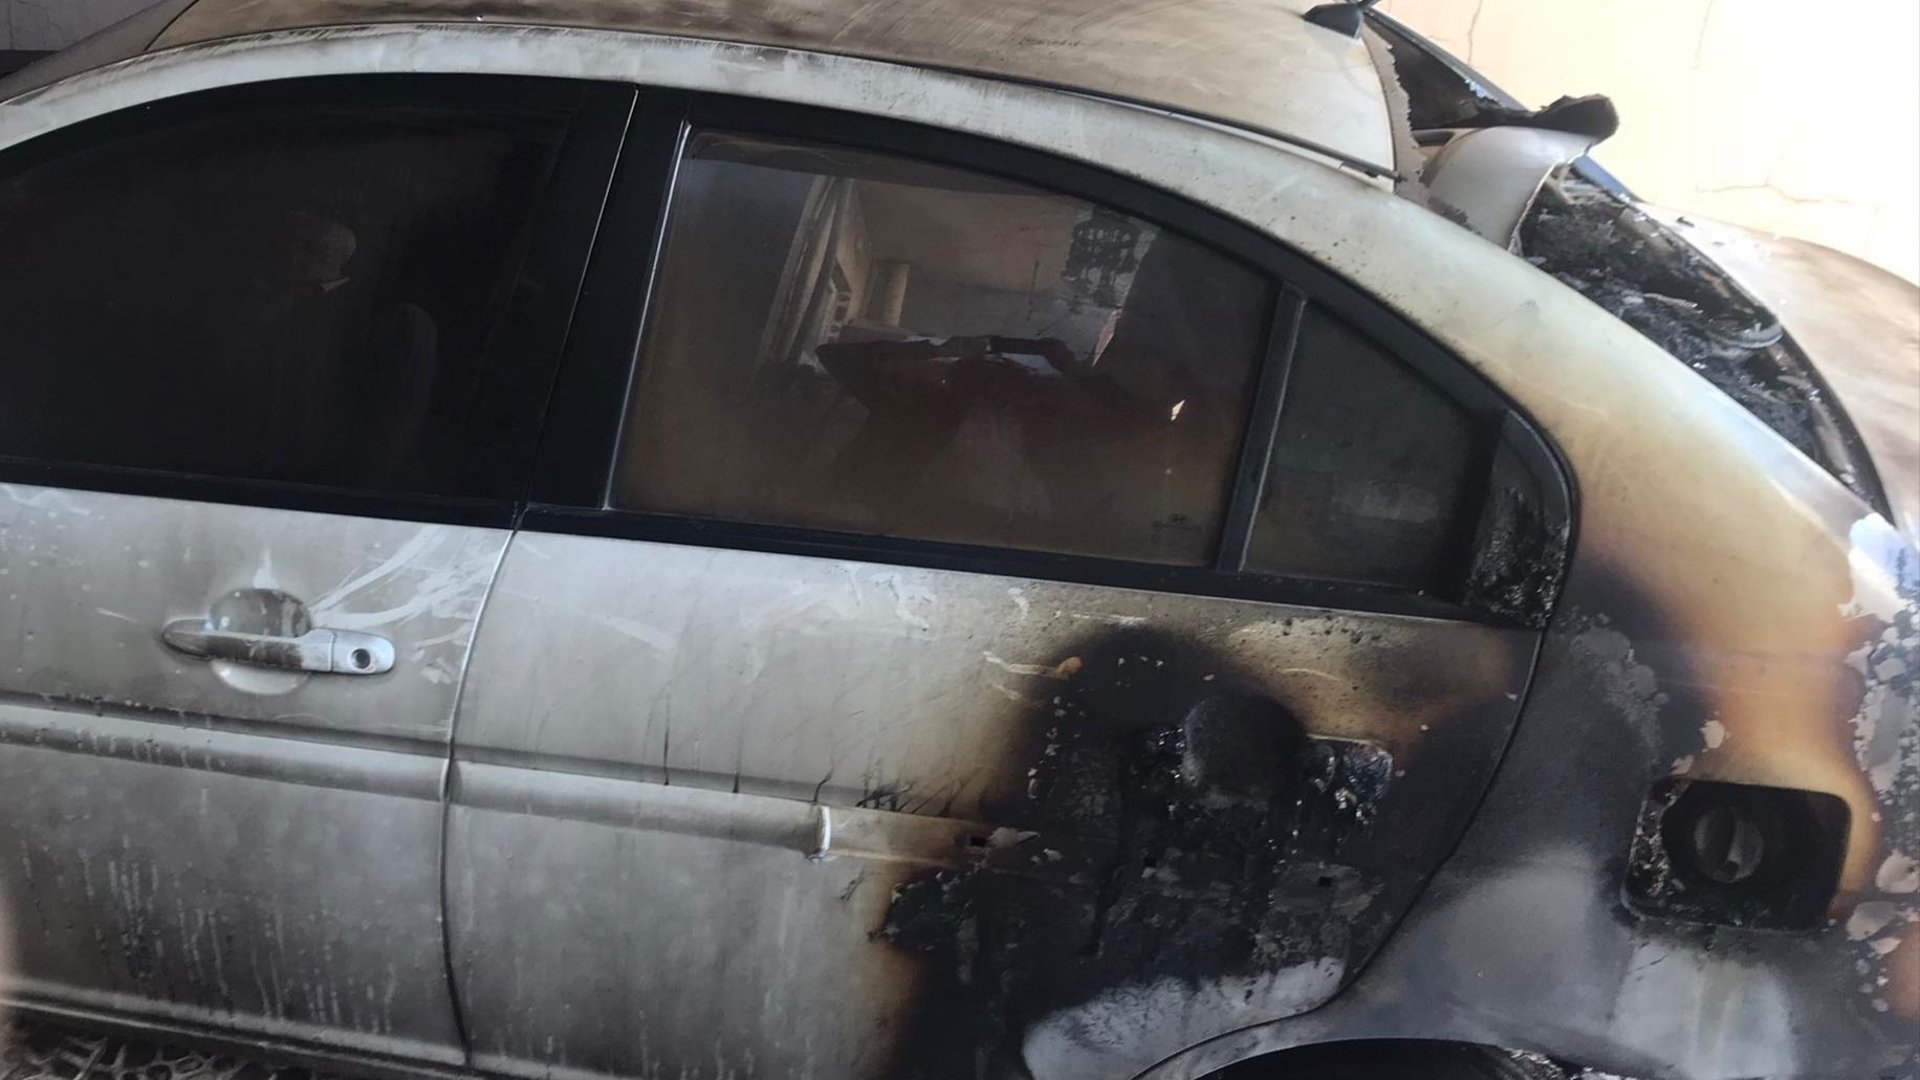 السليمانية: احتراق سيارة في كلار بعد هجوم سابق برمانات.. صاحبها يتهم 4 أشخاص